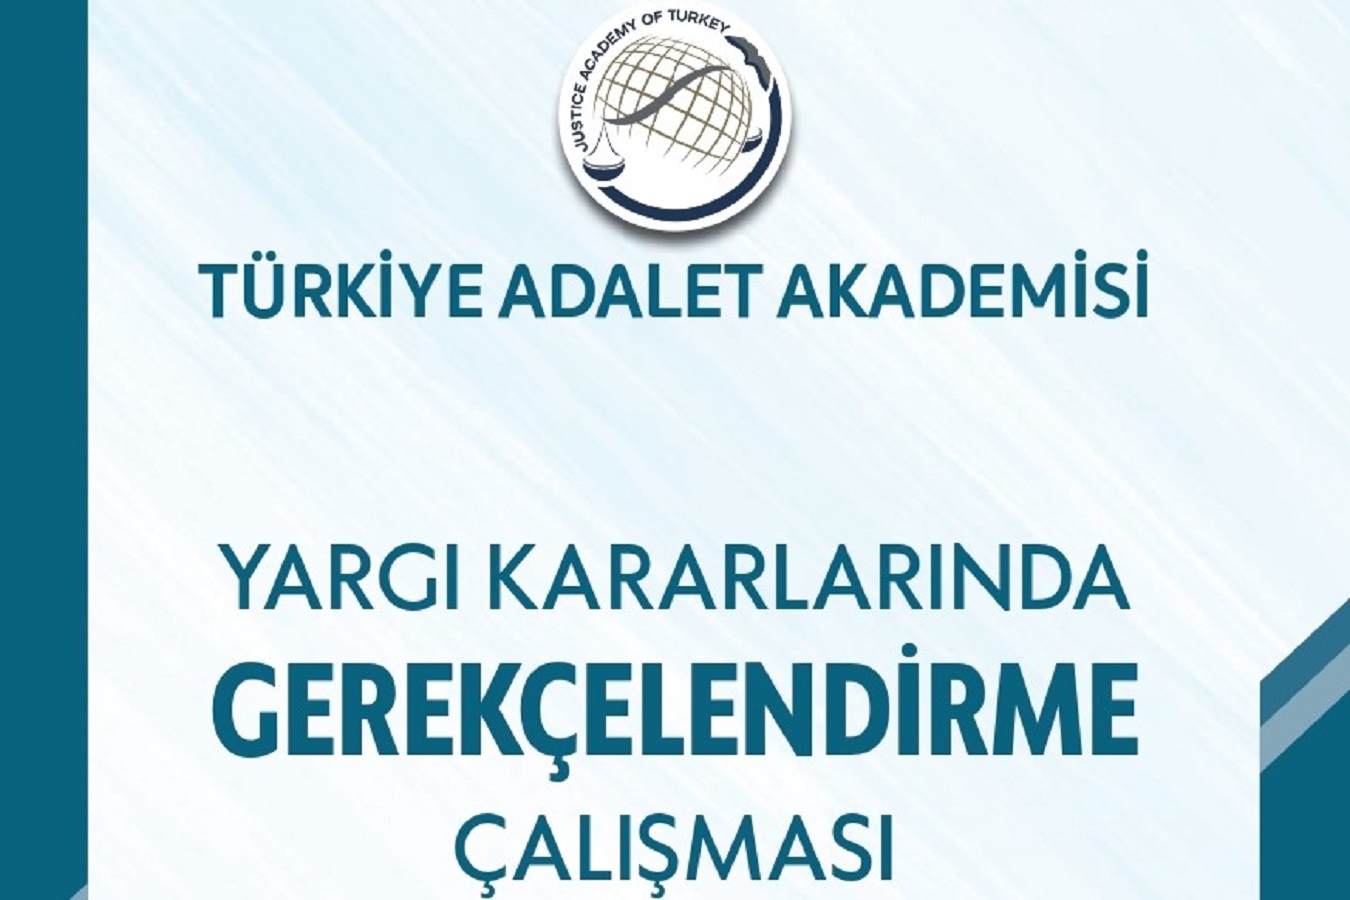 Prof. Dr. Sevilay Uzunallı, Türkiye Adalet Akademisi tarafından düzenlenen "Yargı Kararlarının Gerekçelendirilmesinde Hukuk Fakültelerinin Rolü" Çalıştayı'na katılacak